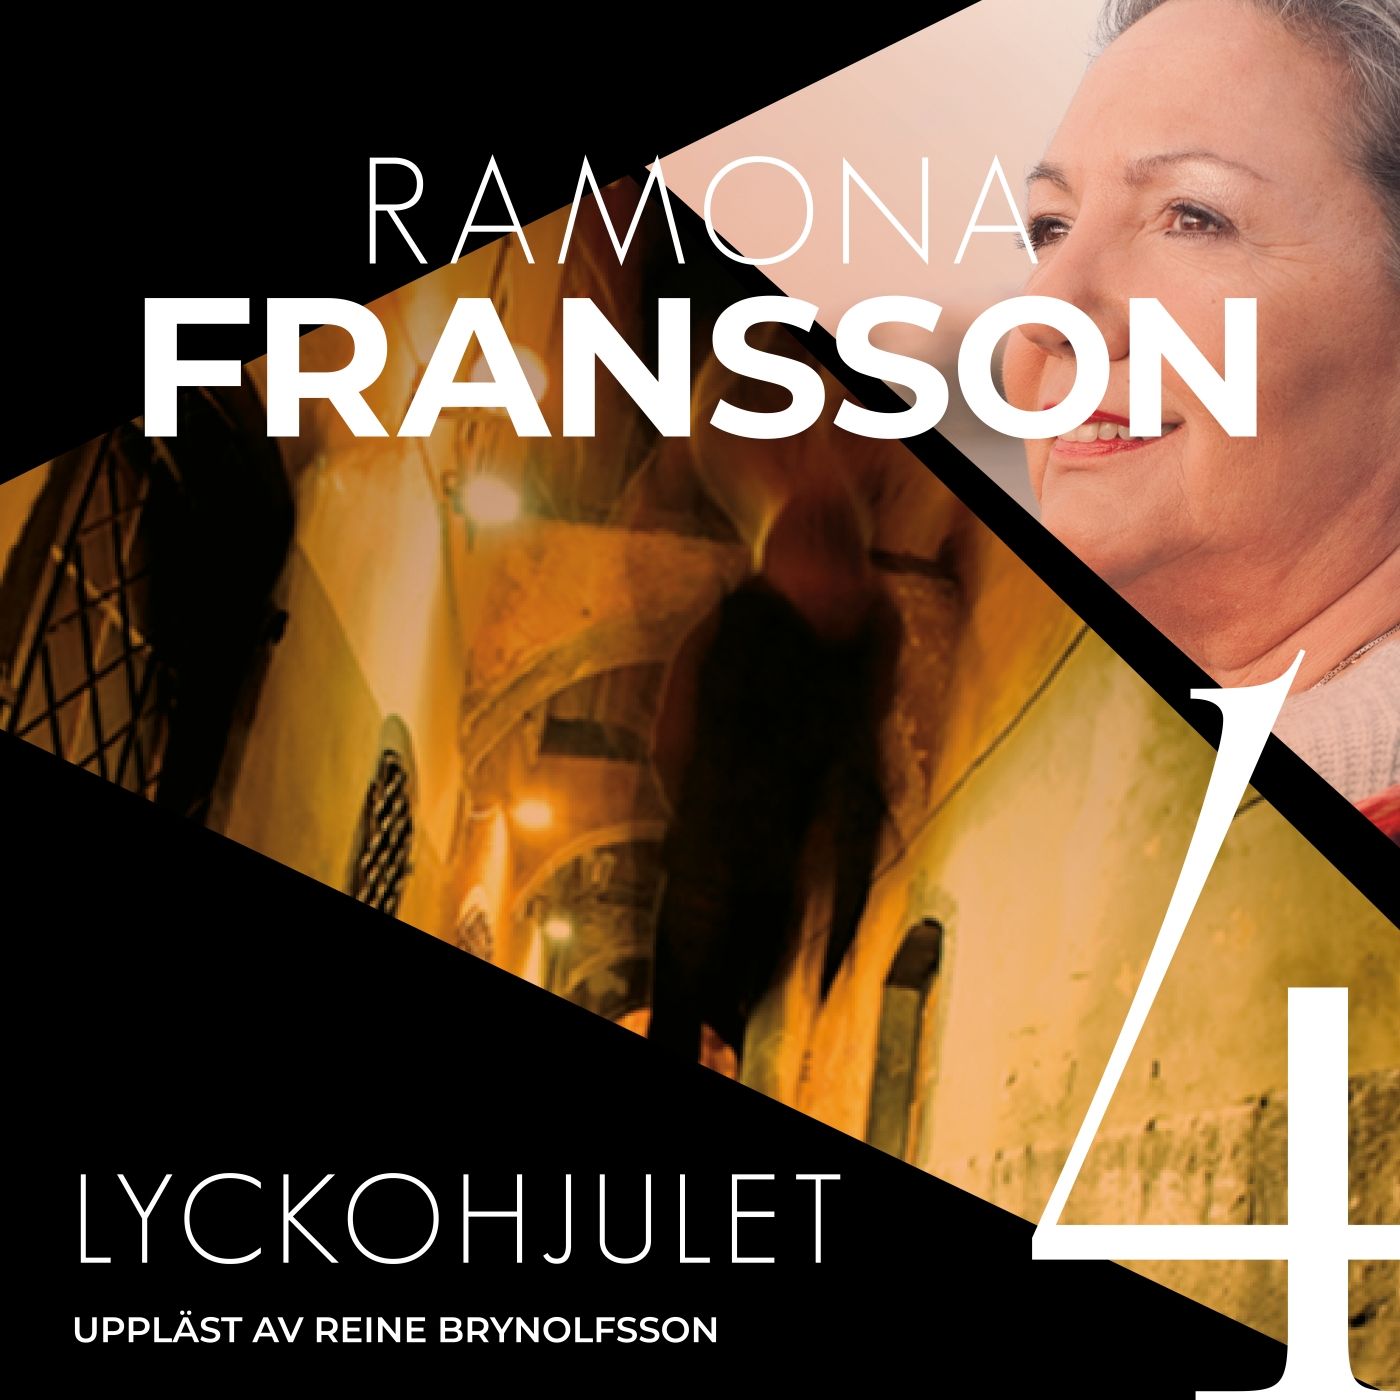 Lyckohjulet, ljudbok av Ramona Fransson